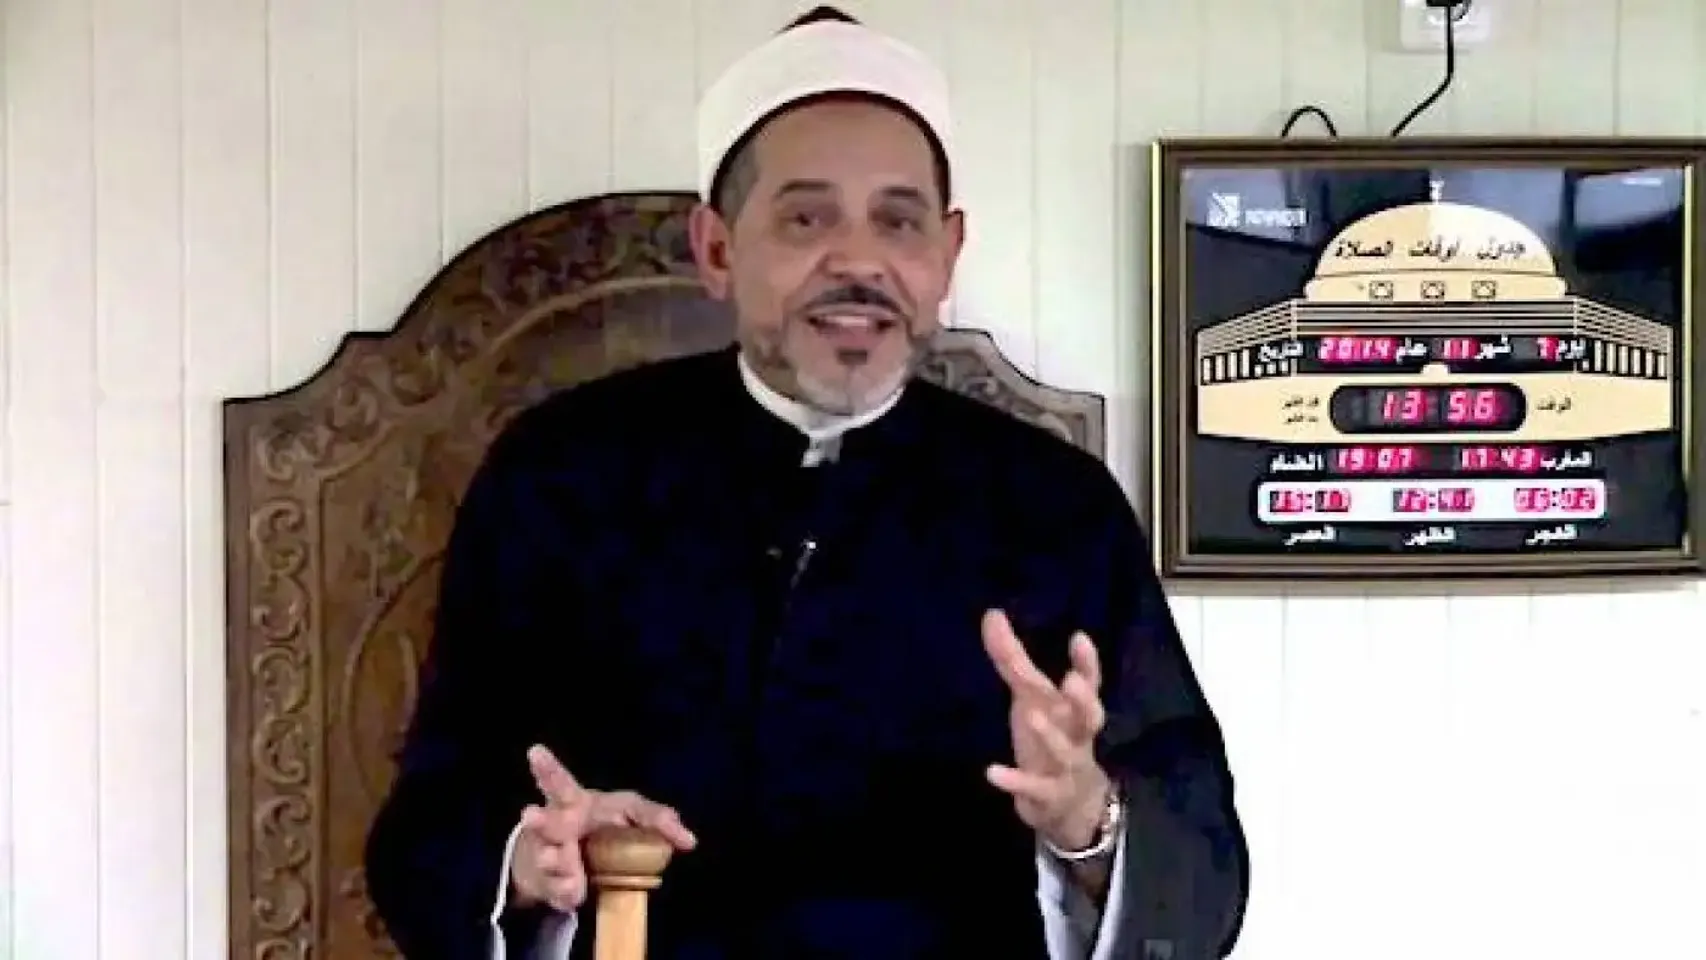 L’Imam Mohamed Tataïat, condamné pour antisémitisme a été expulsé